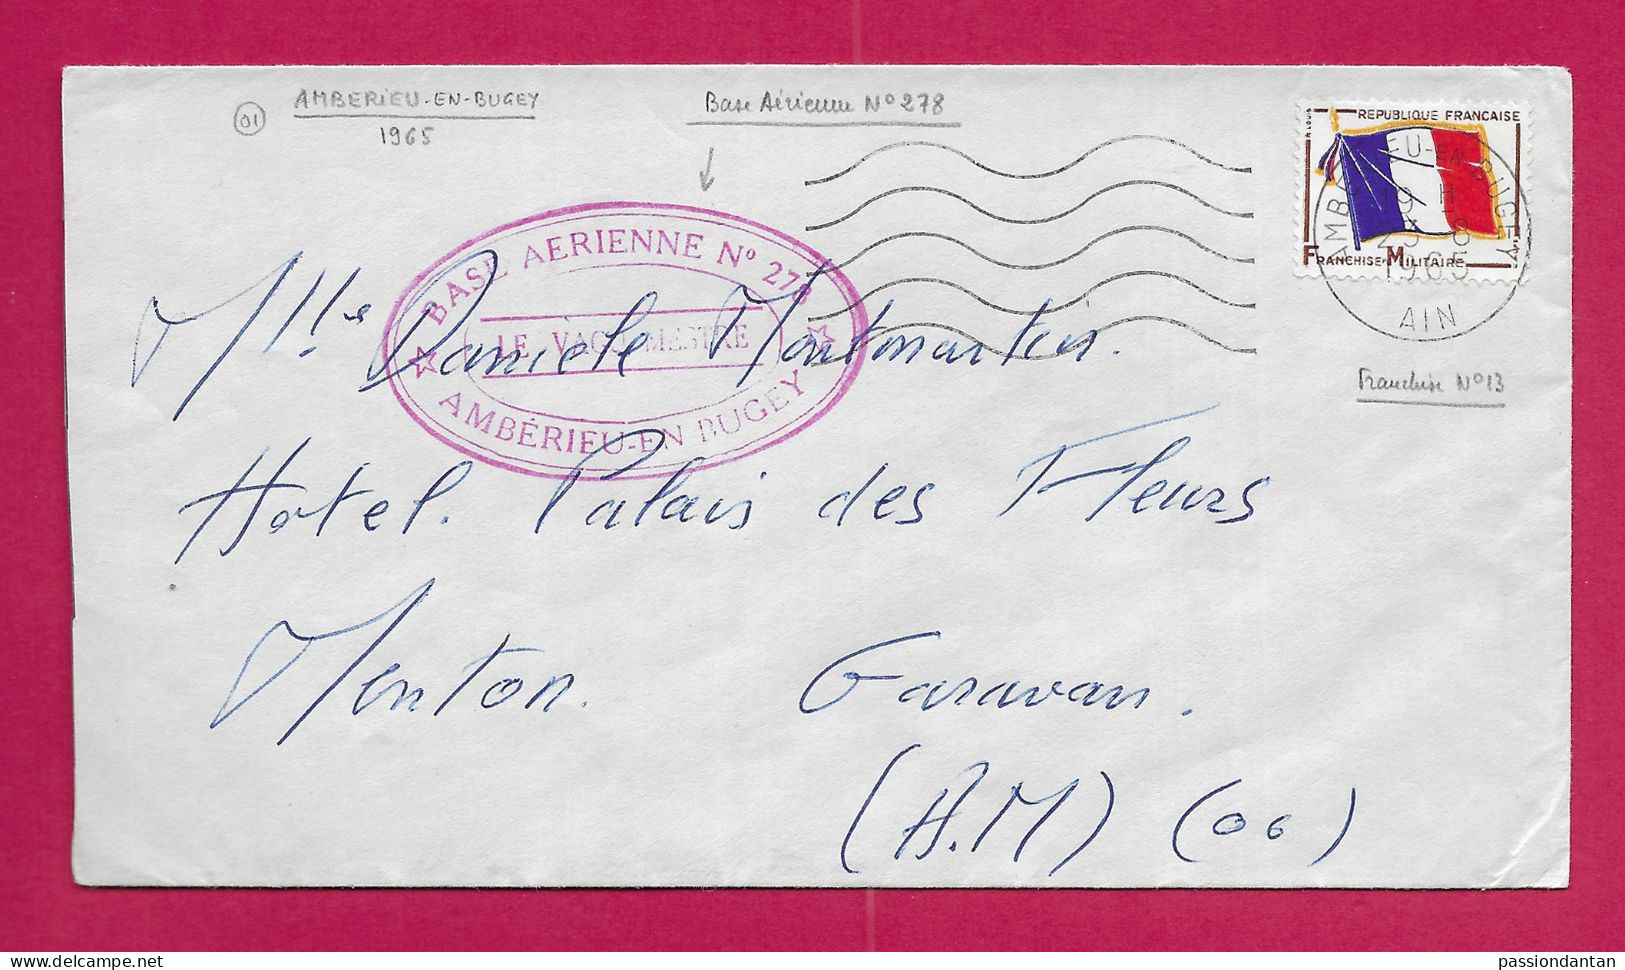 Enveloppe Datée De 1965 - Timbre Humide Base Aérienne N° 278 à Ambérieu En Bugey Dans L'Ain - Military Airmail